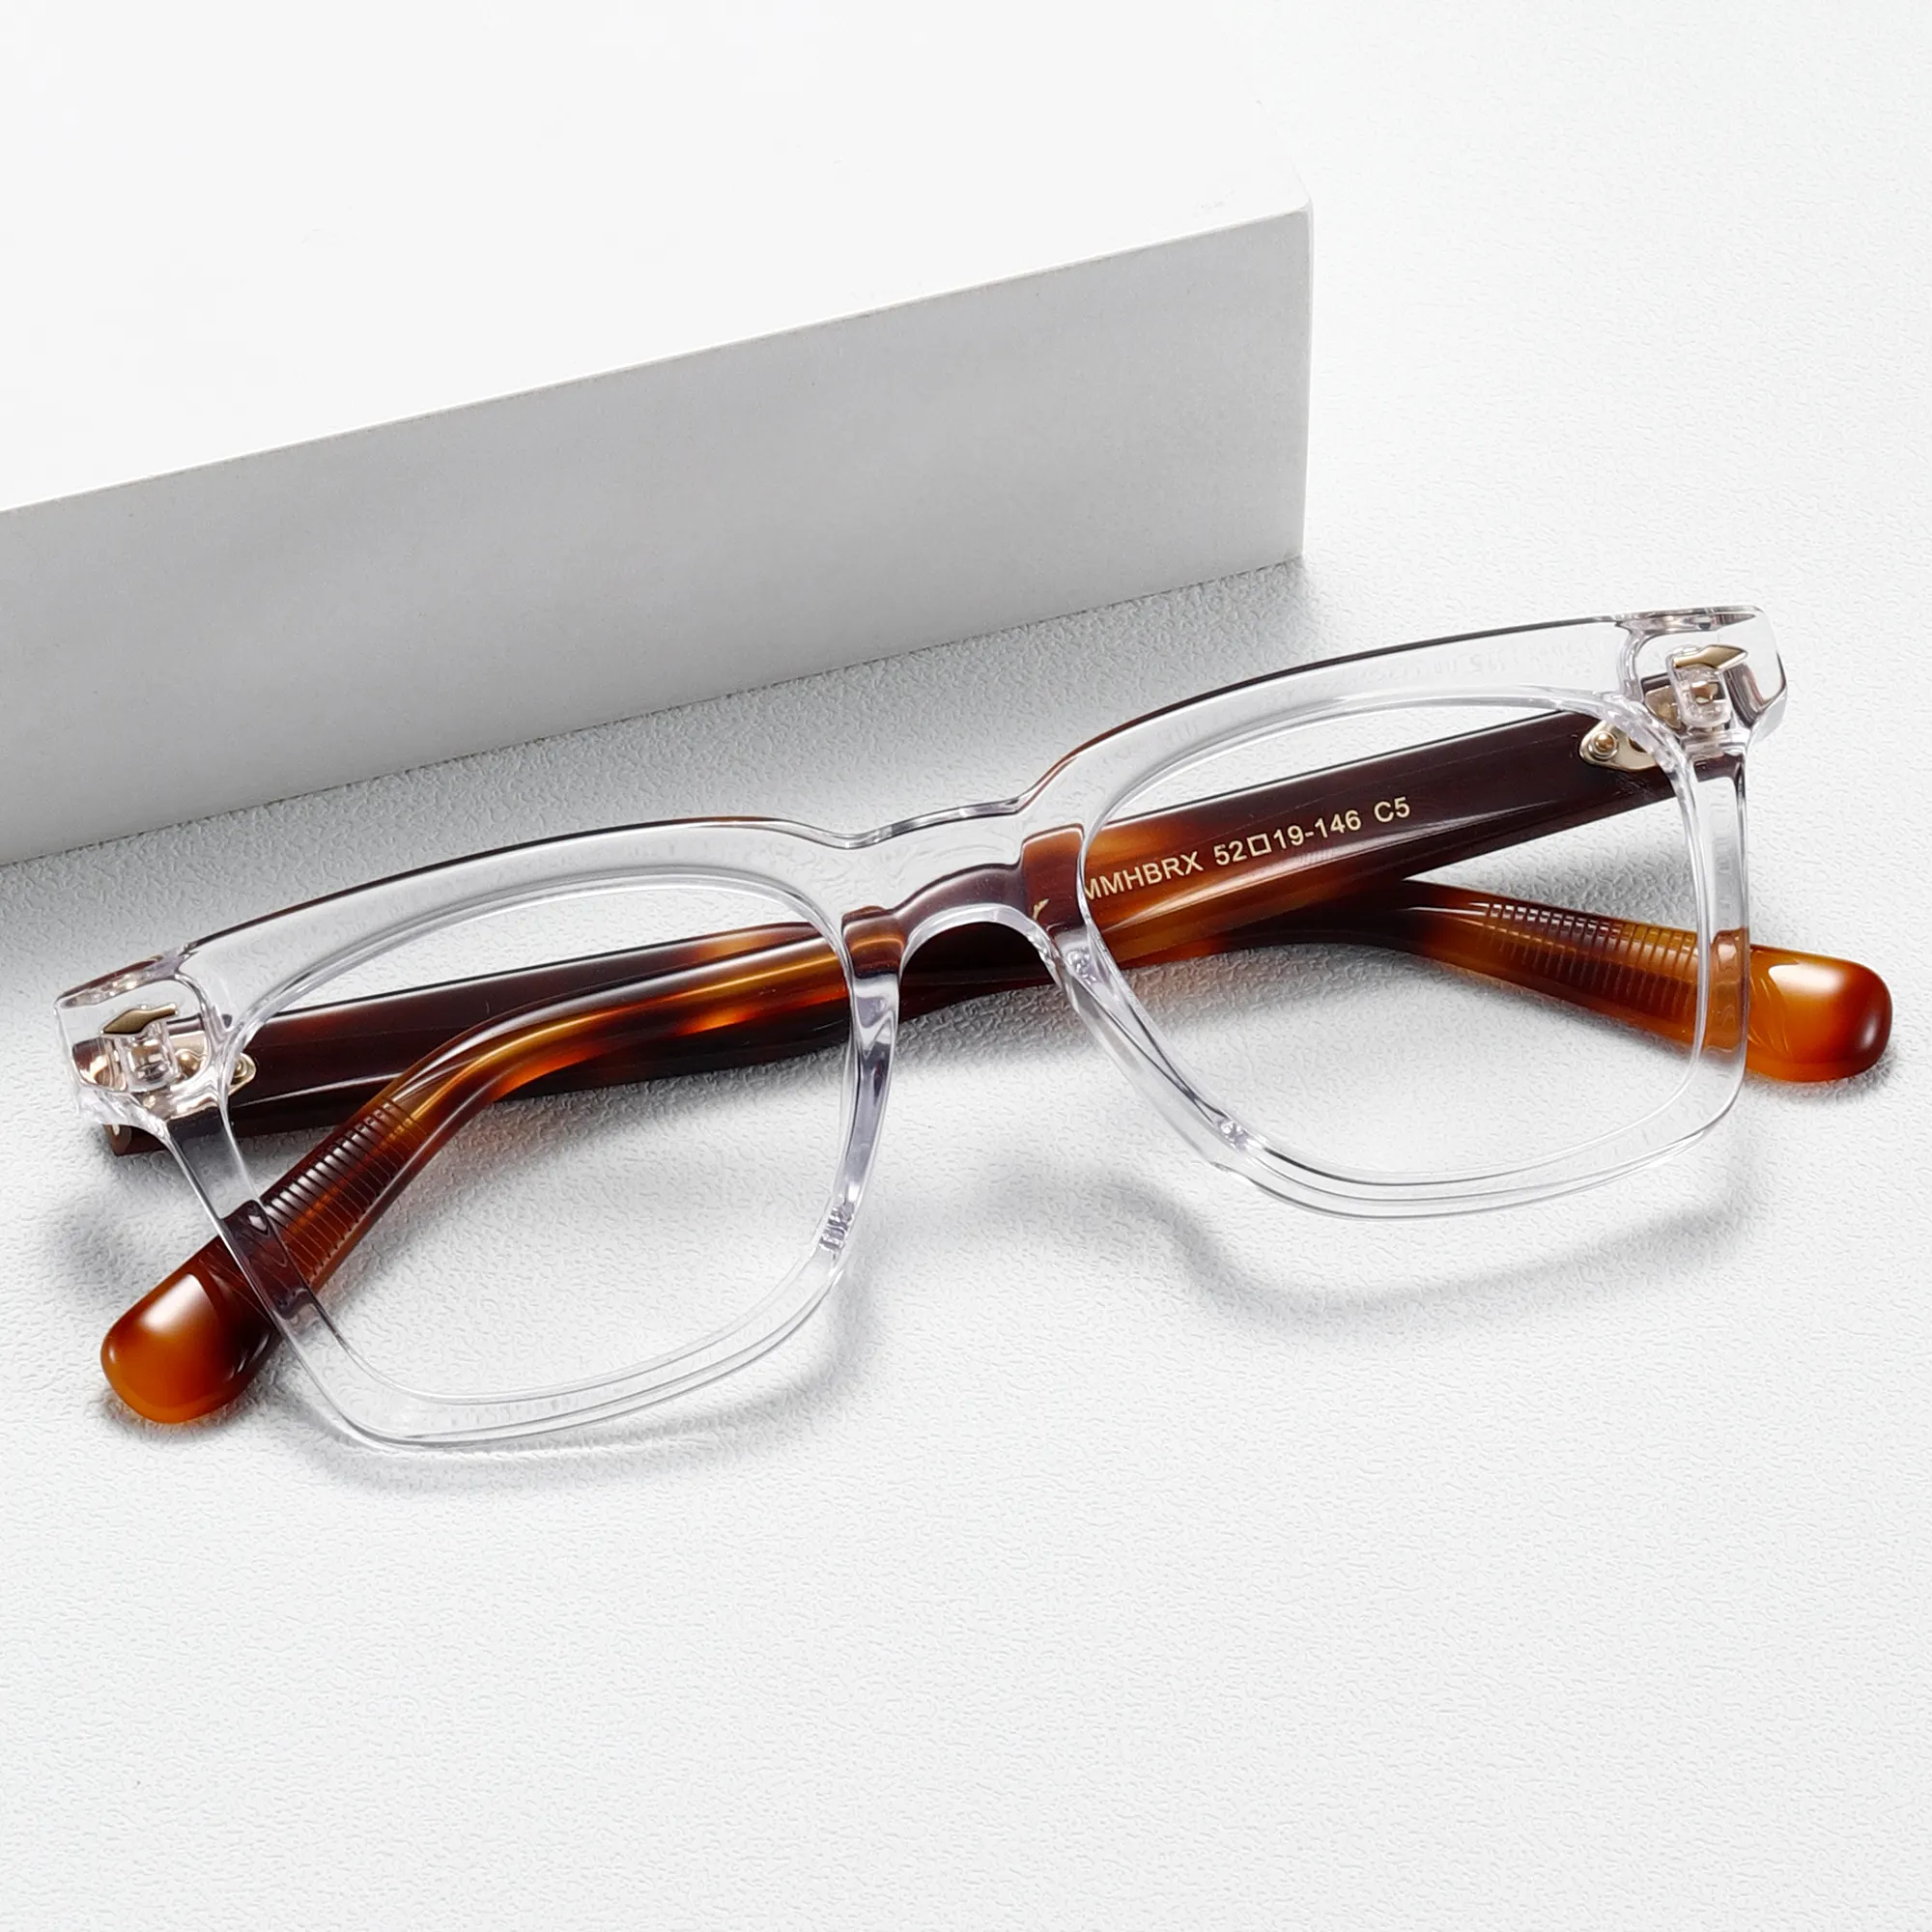 إطارات نظارات فاخرة للرجال من اسيتات بالشعار المخصص من Figroad نظارات بتصميم إيطالي عصري